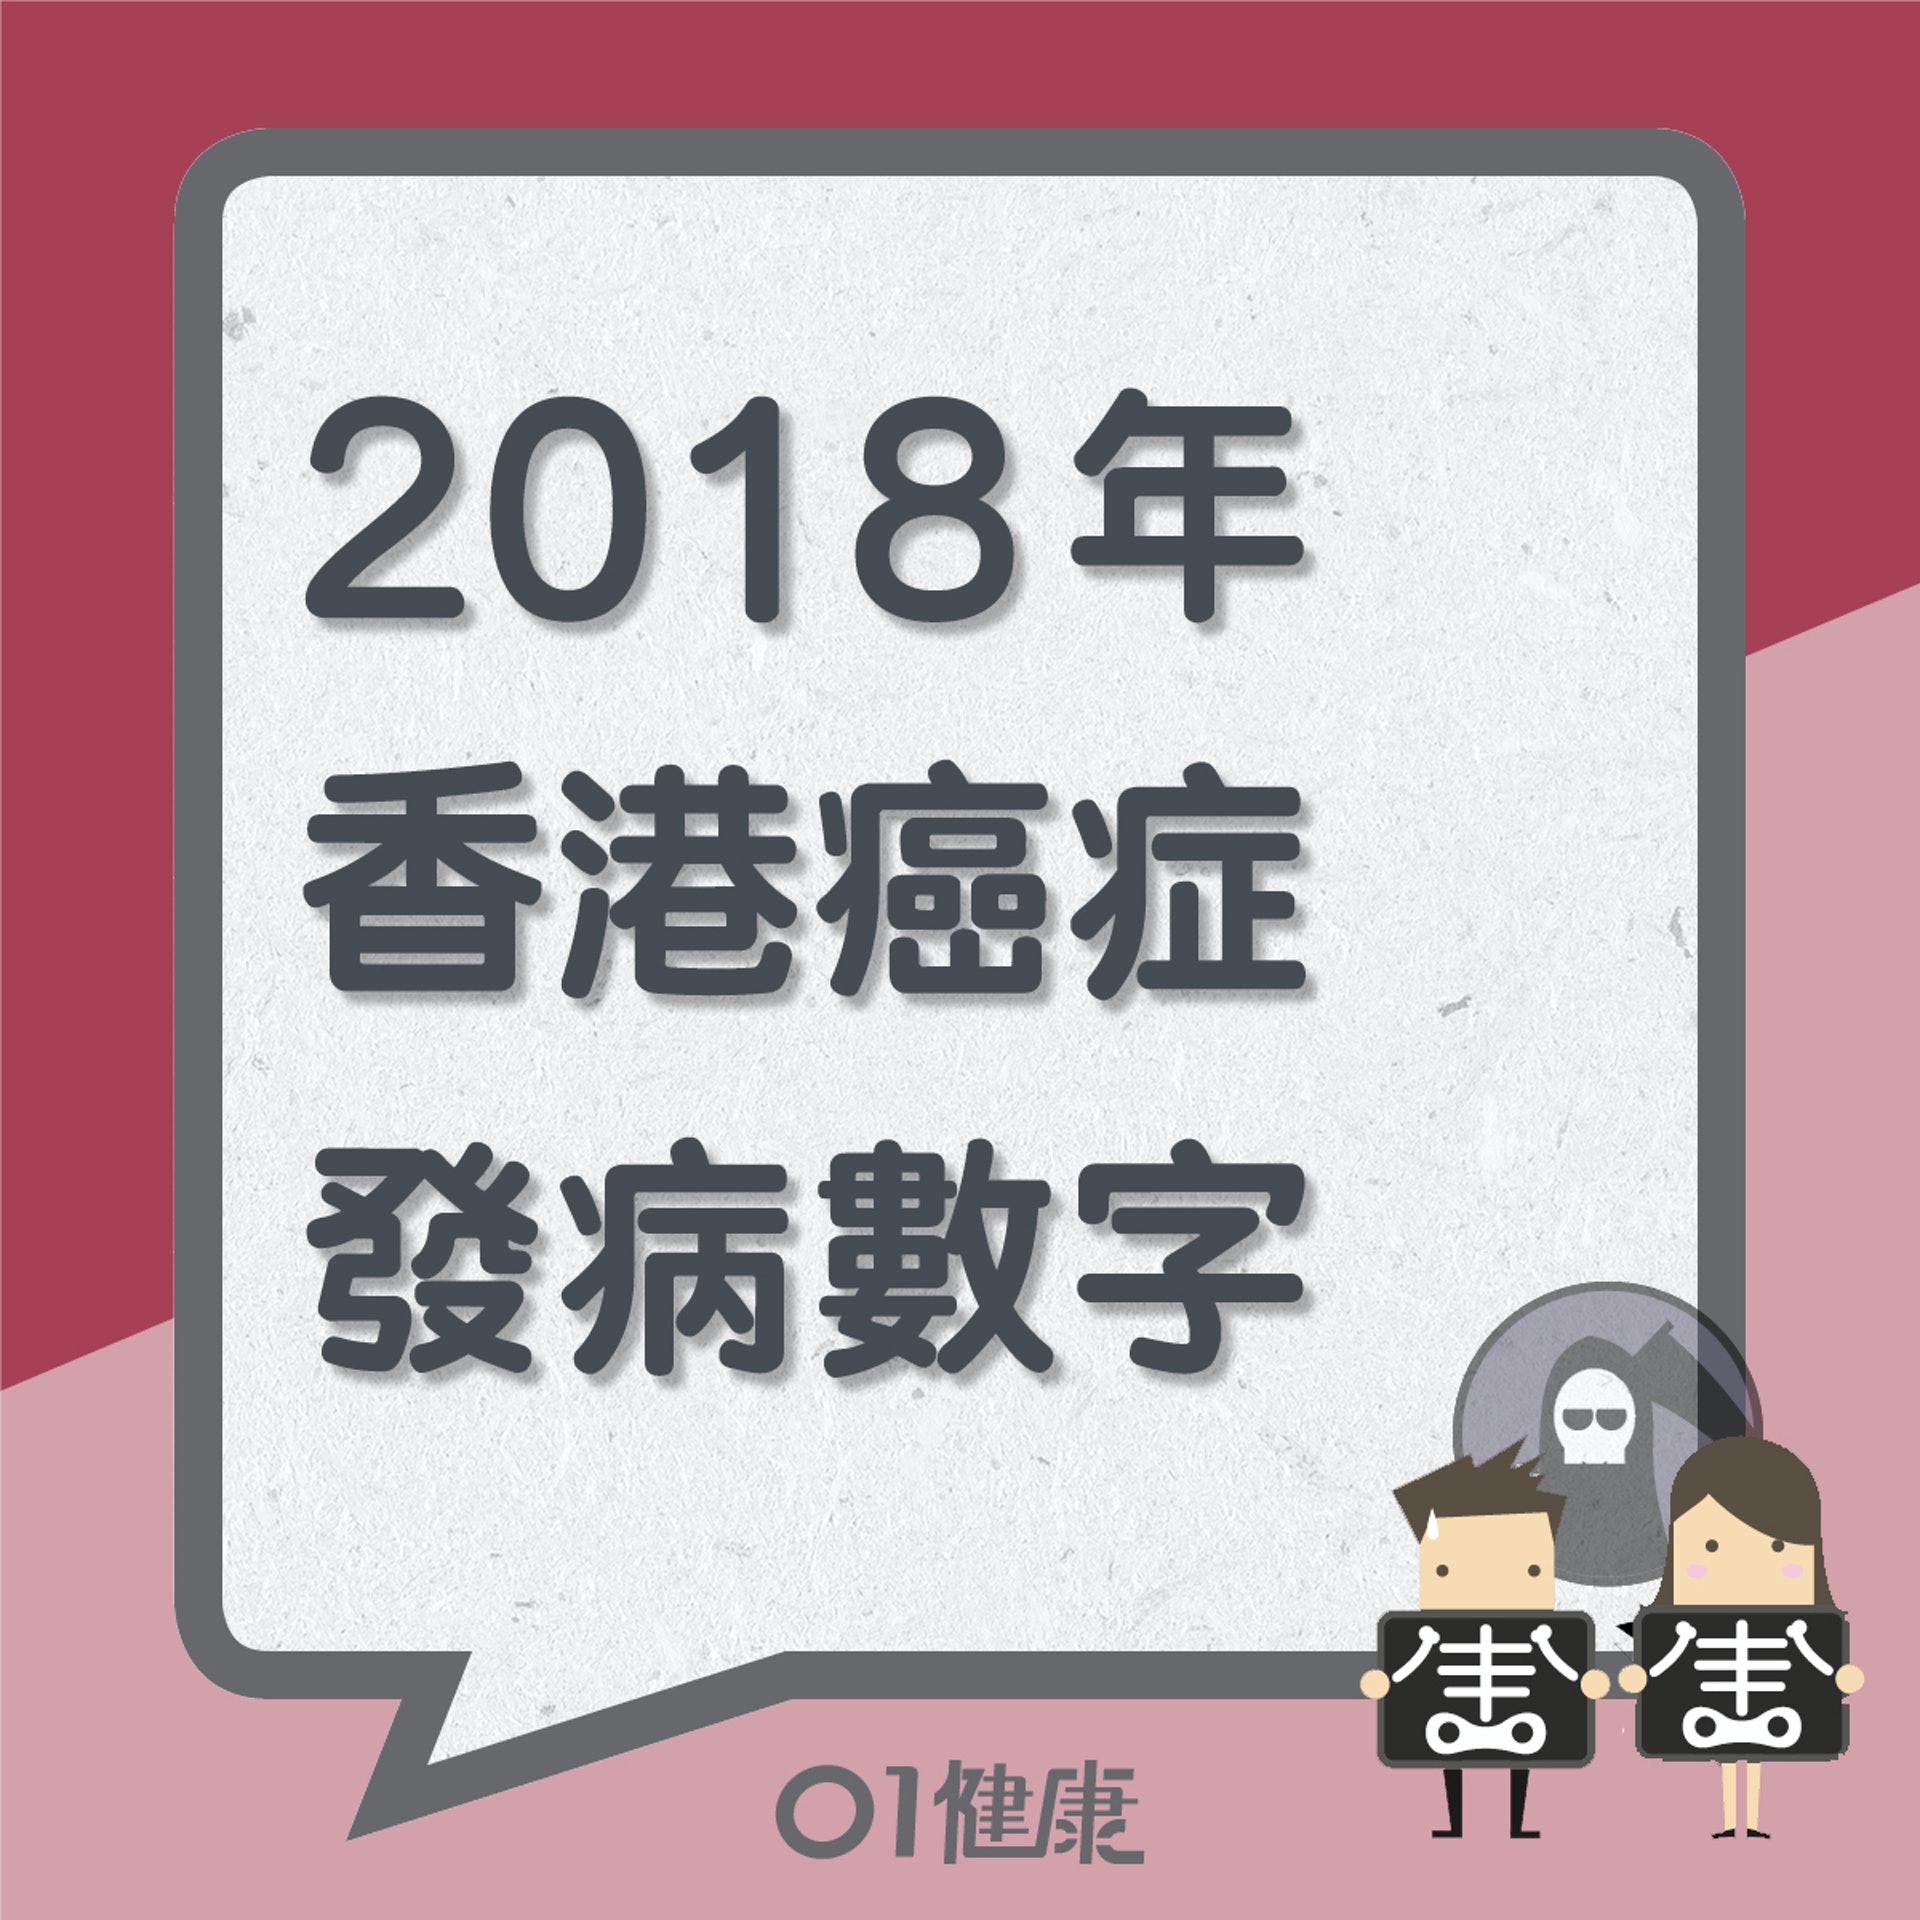 2018年香港癌症發病數字（01製圖）